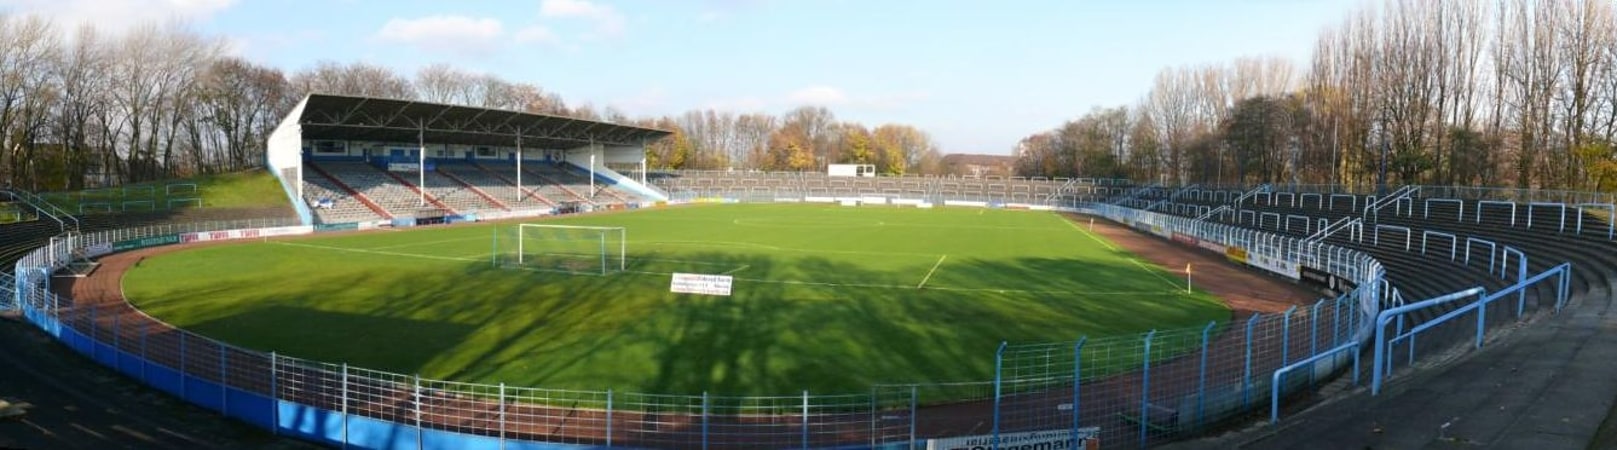 Stadium in Herne